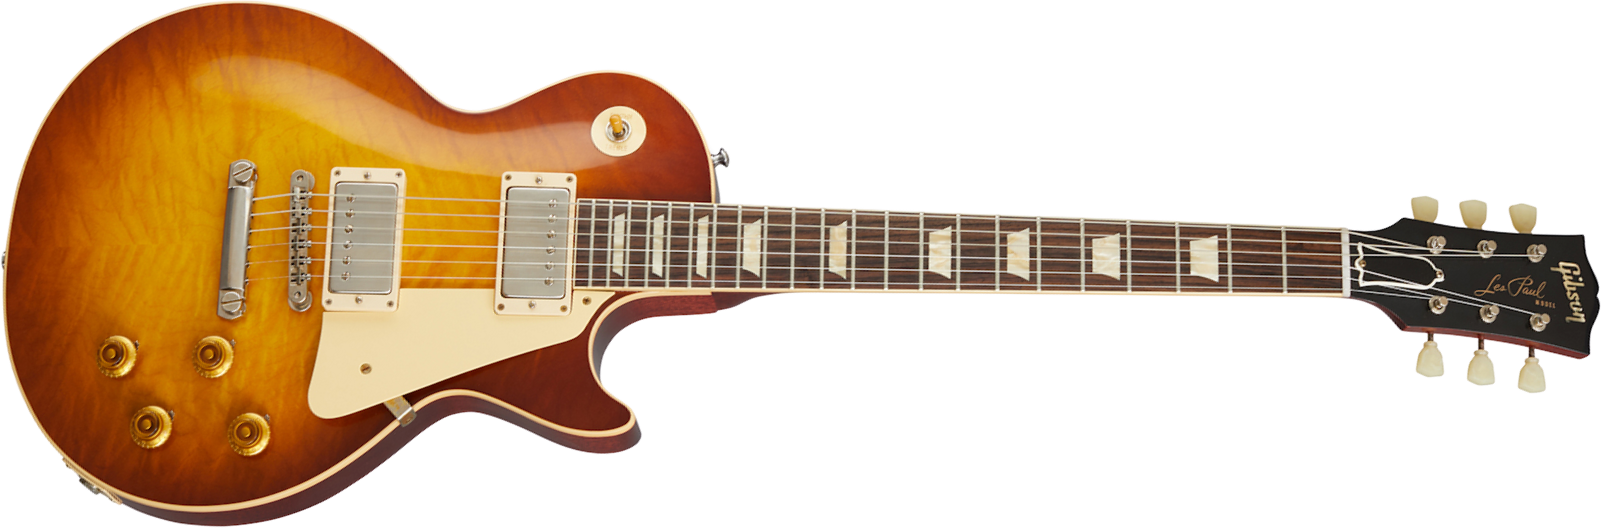 Gibson Custom Shop Les Paul Standard 1959 Reissue 2020 2h Ht Rw - Vos Iced Tea Burst - Guitare Électrique Single Cut - Main picture